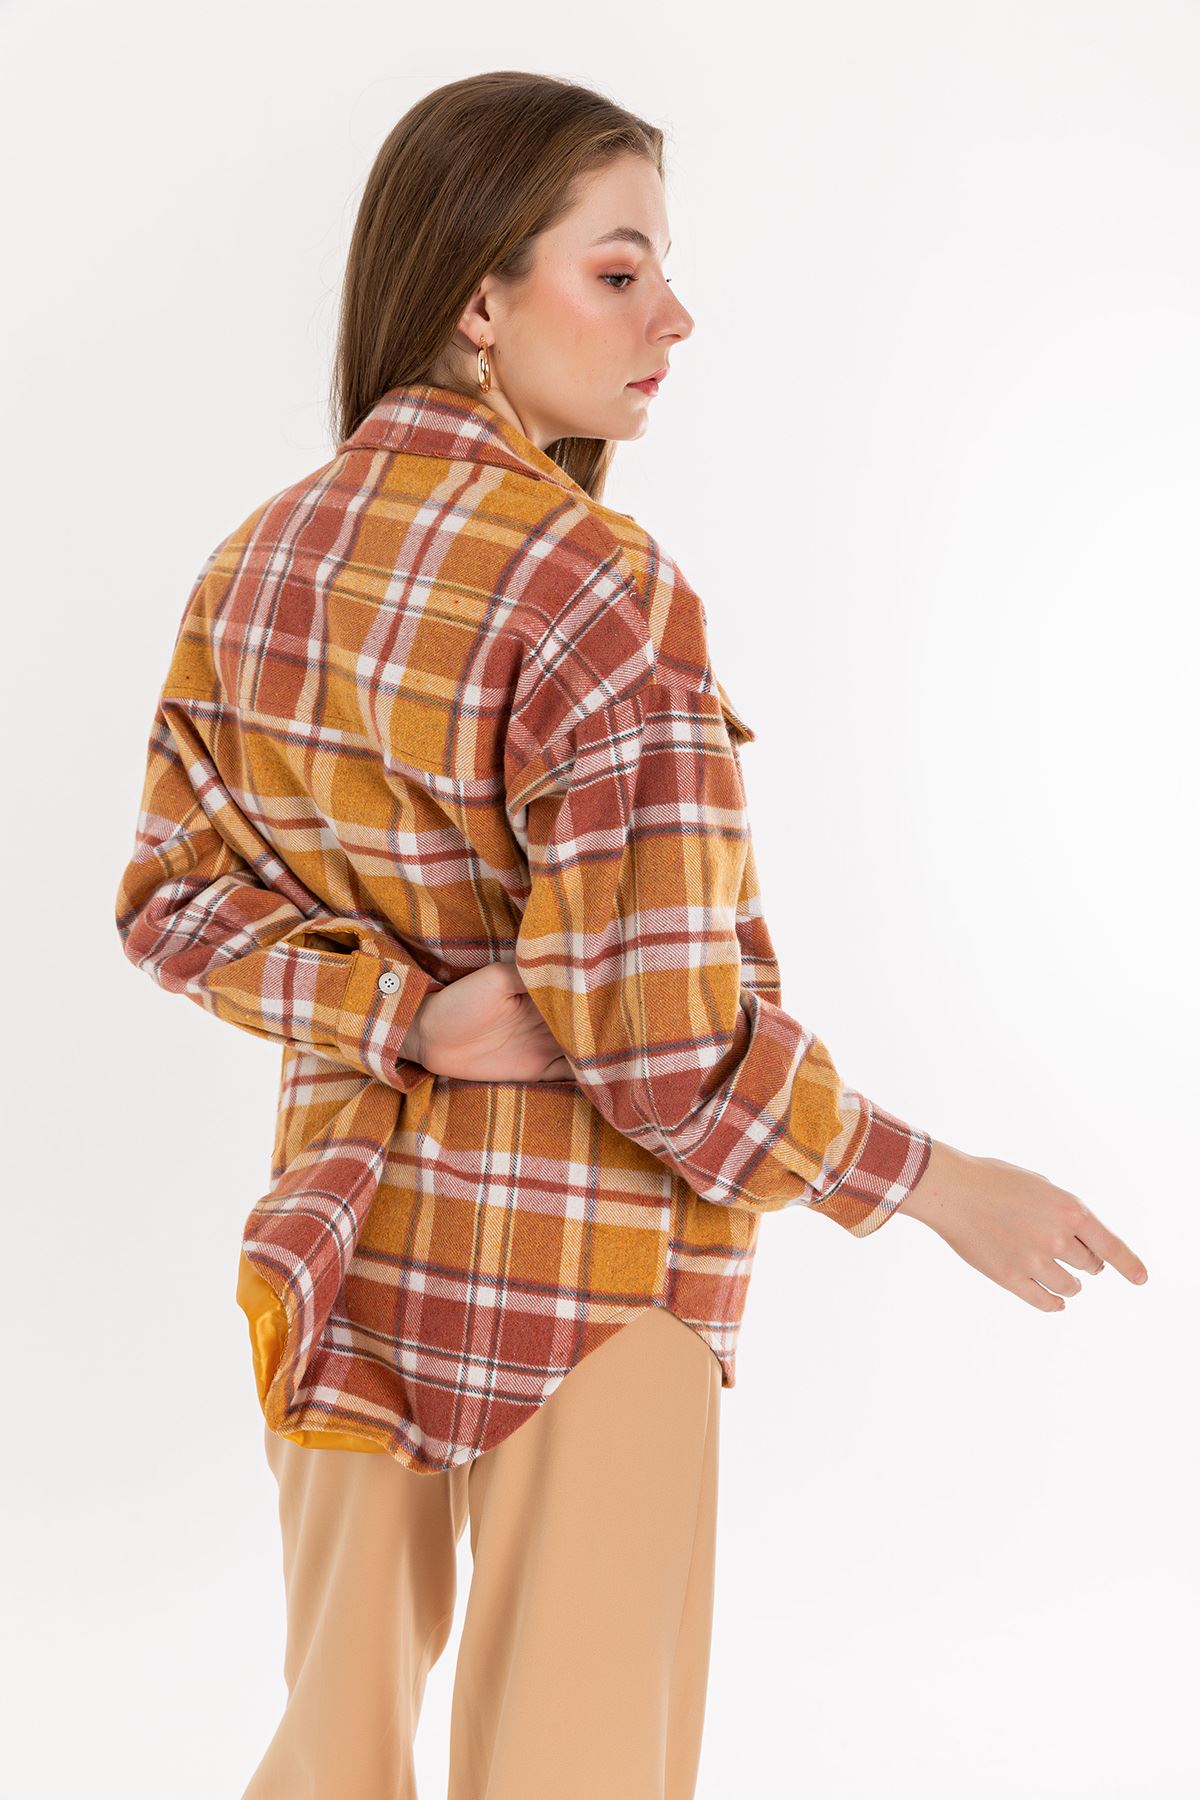 Long Sleeve Below Hip Oversize Striped Women'S Shirt - Light Brown